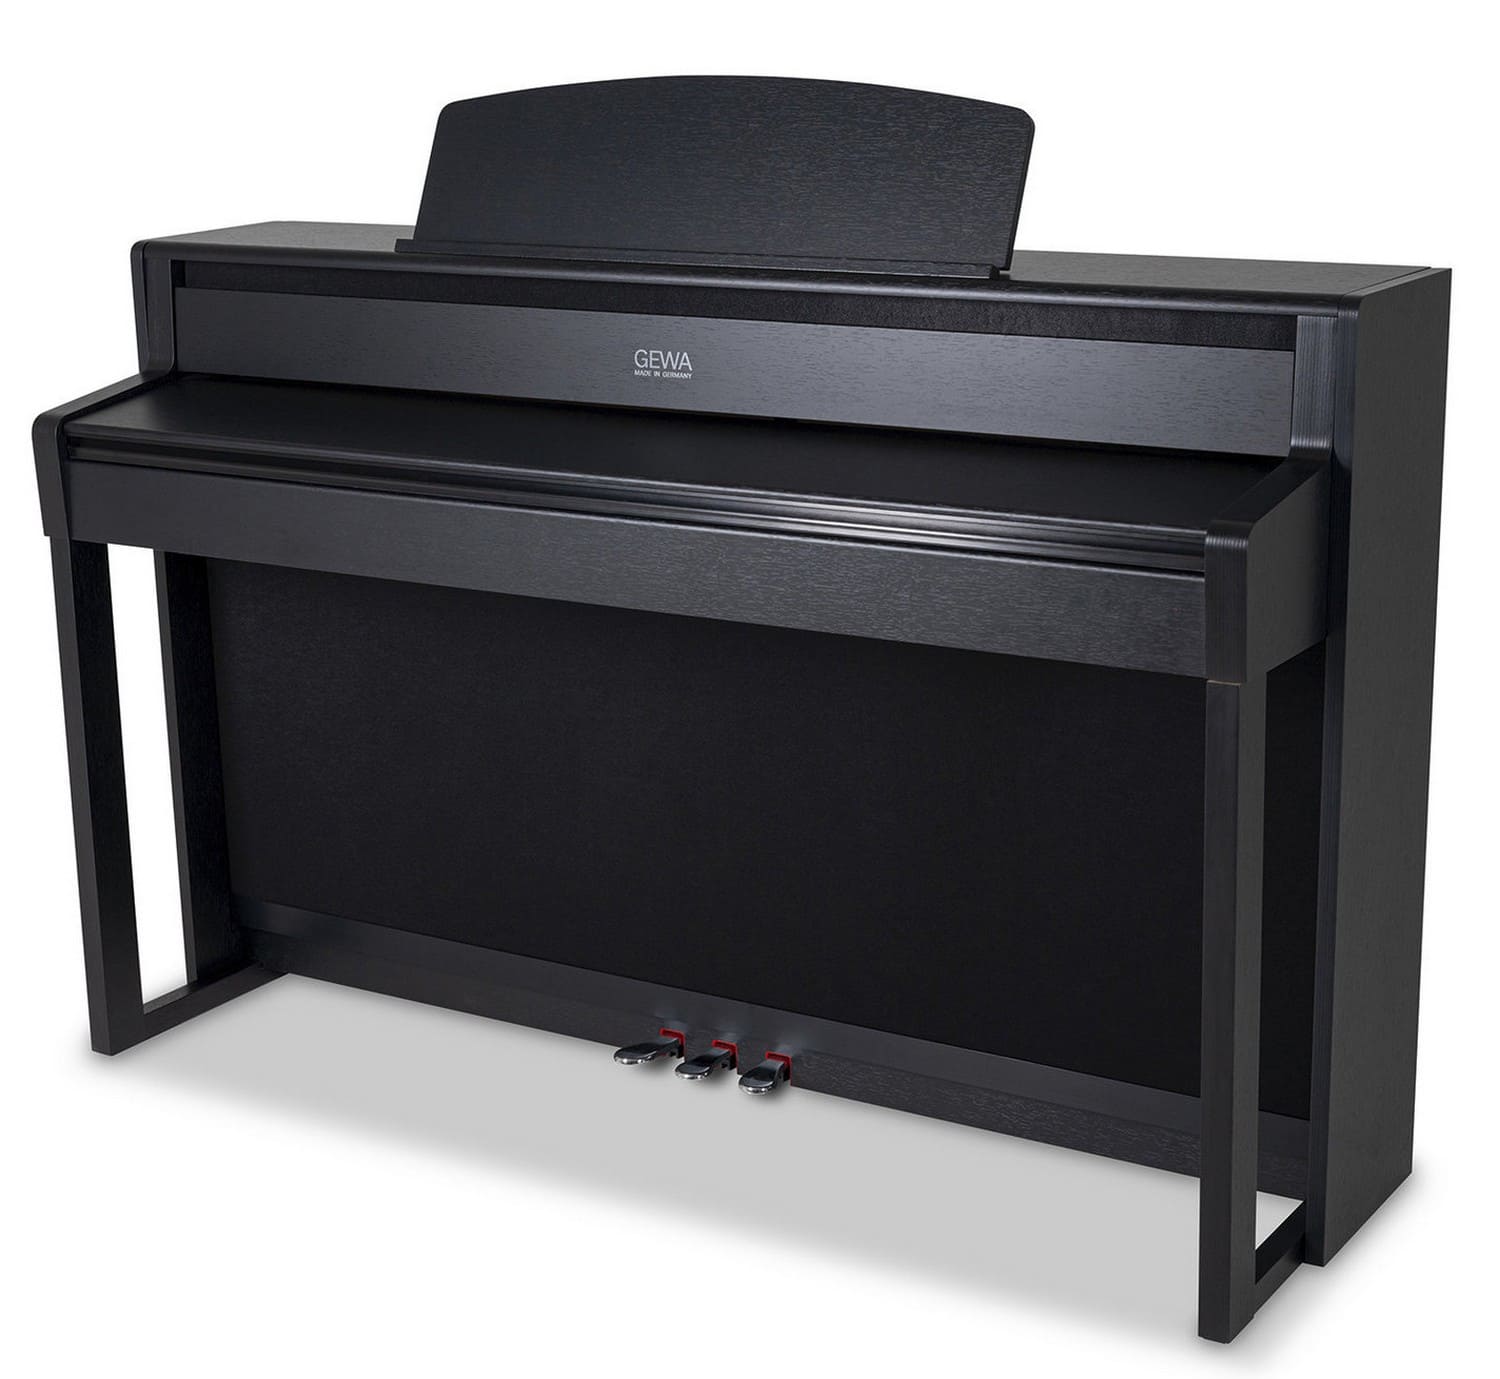 Цифровое пианино GEWA UP 405 Black Matt